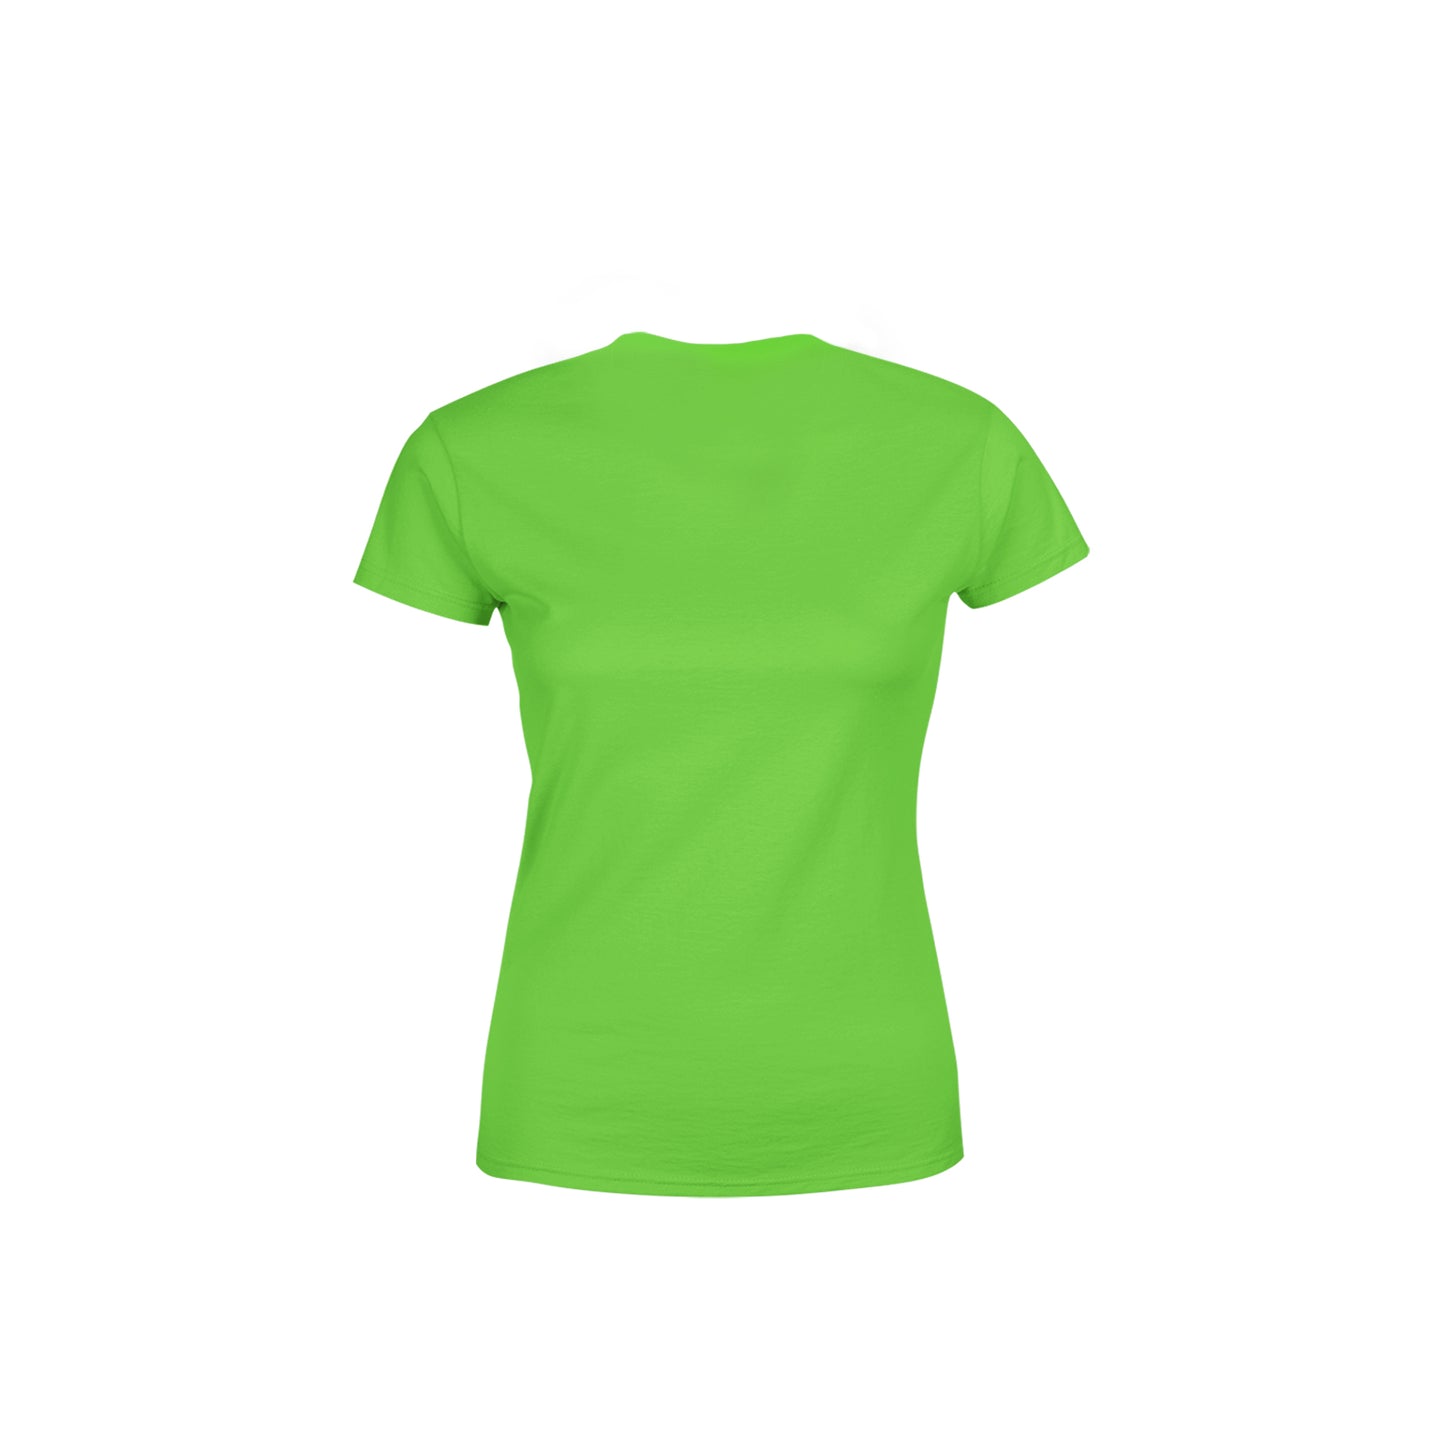 22 Number Women's T-Shirt (Liril Green)